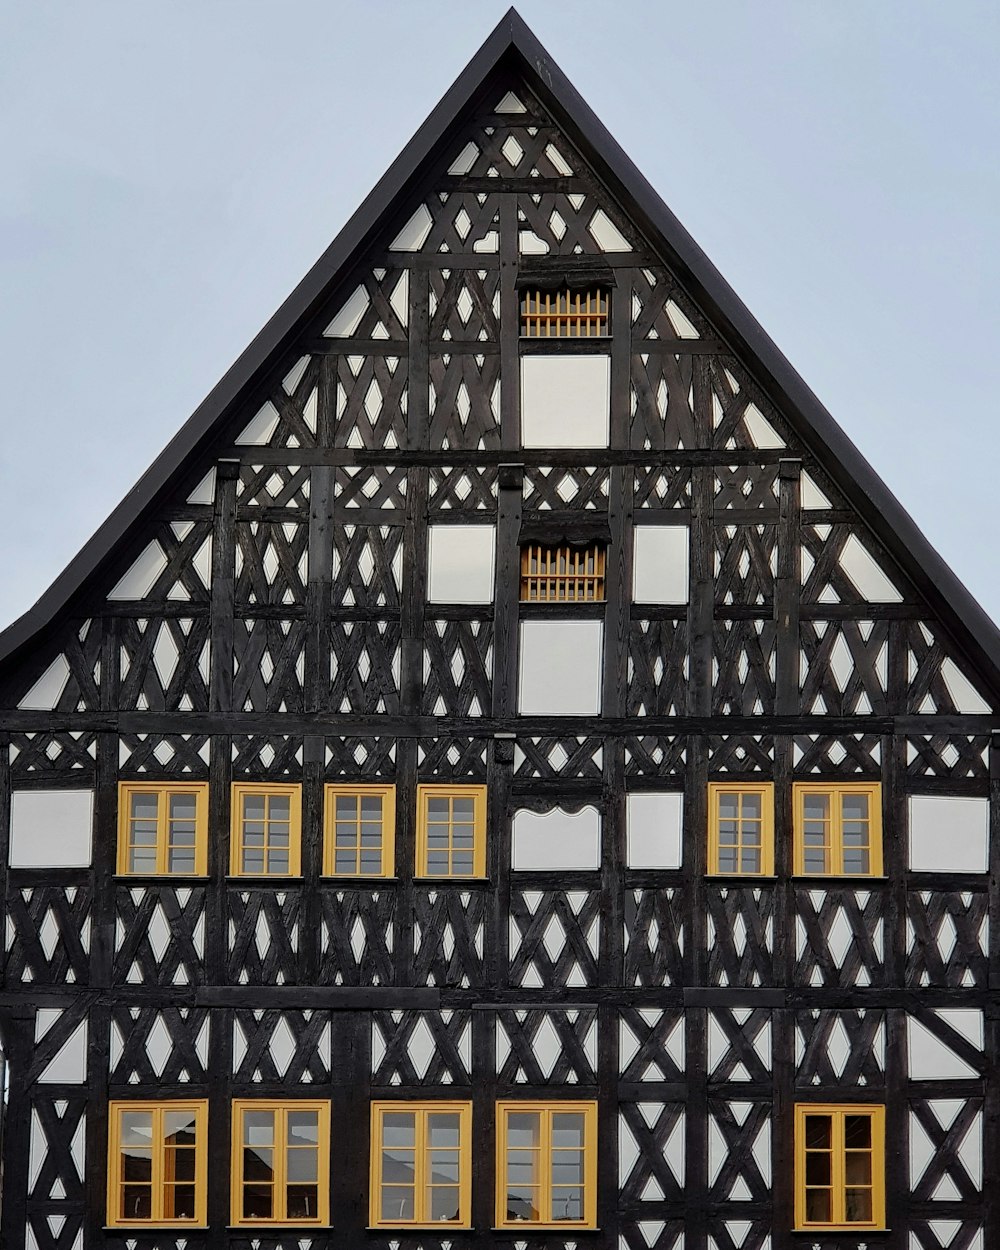 Edificio de madera negra, beige y blanca con múltiples ventanas